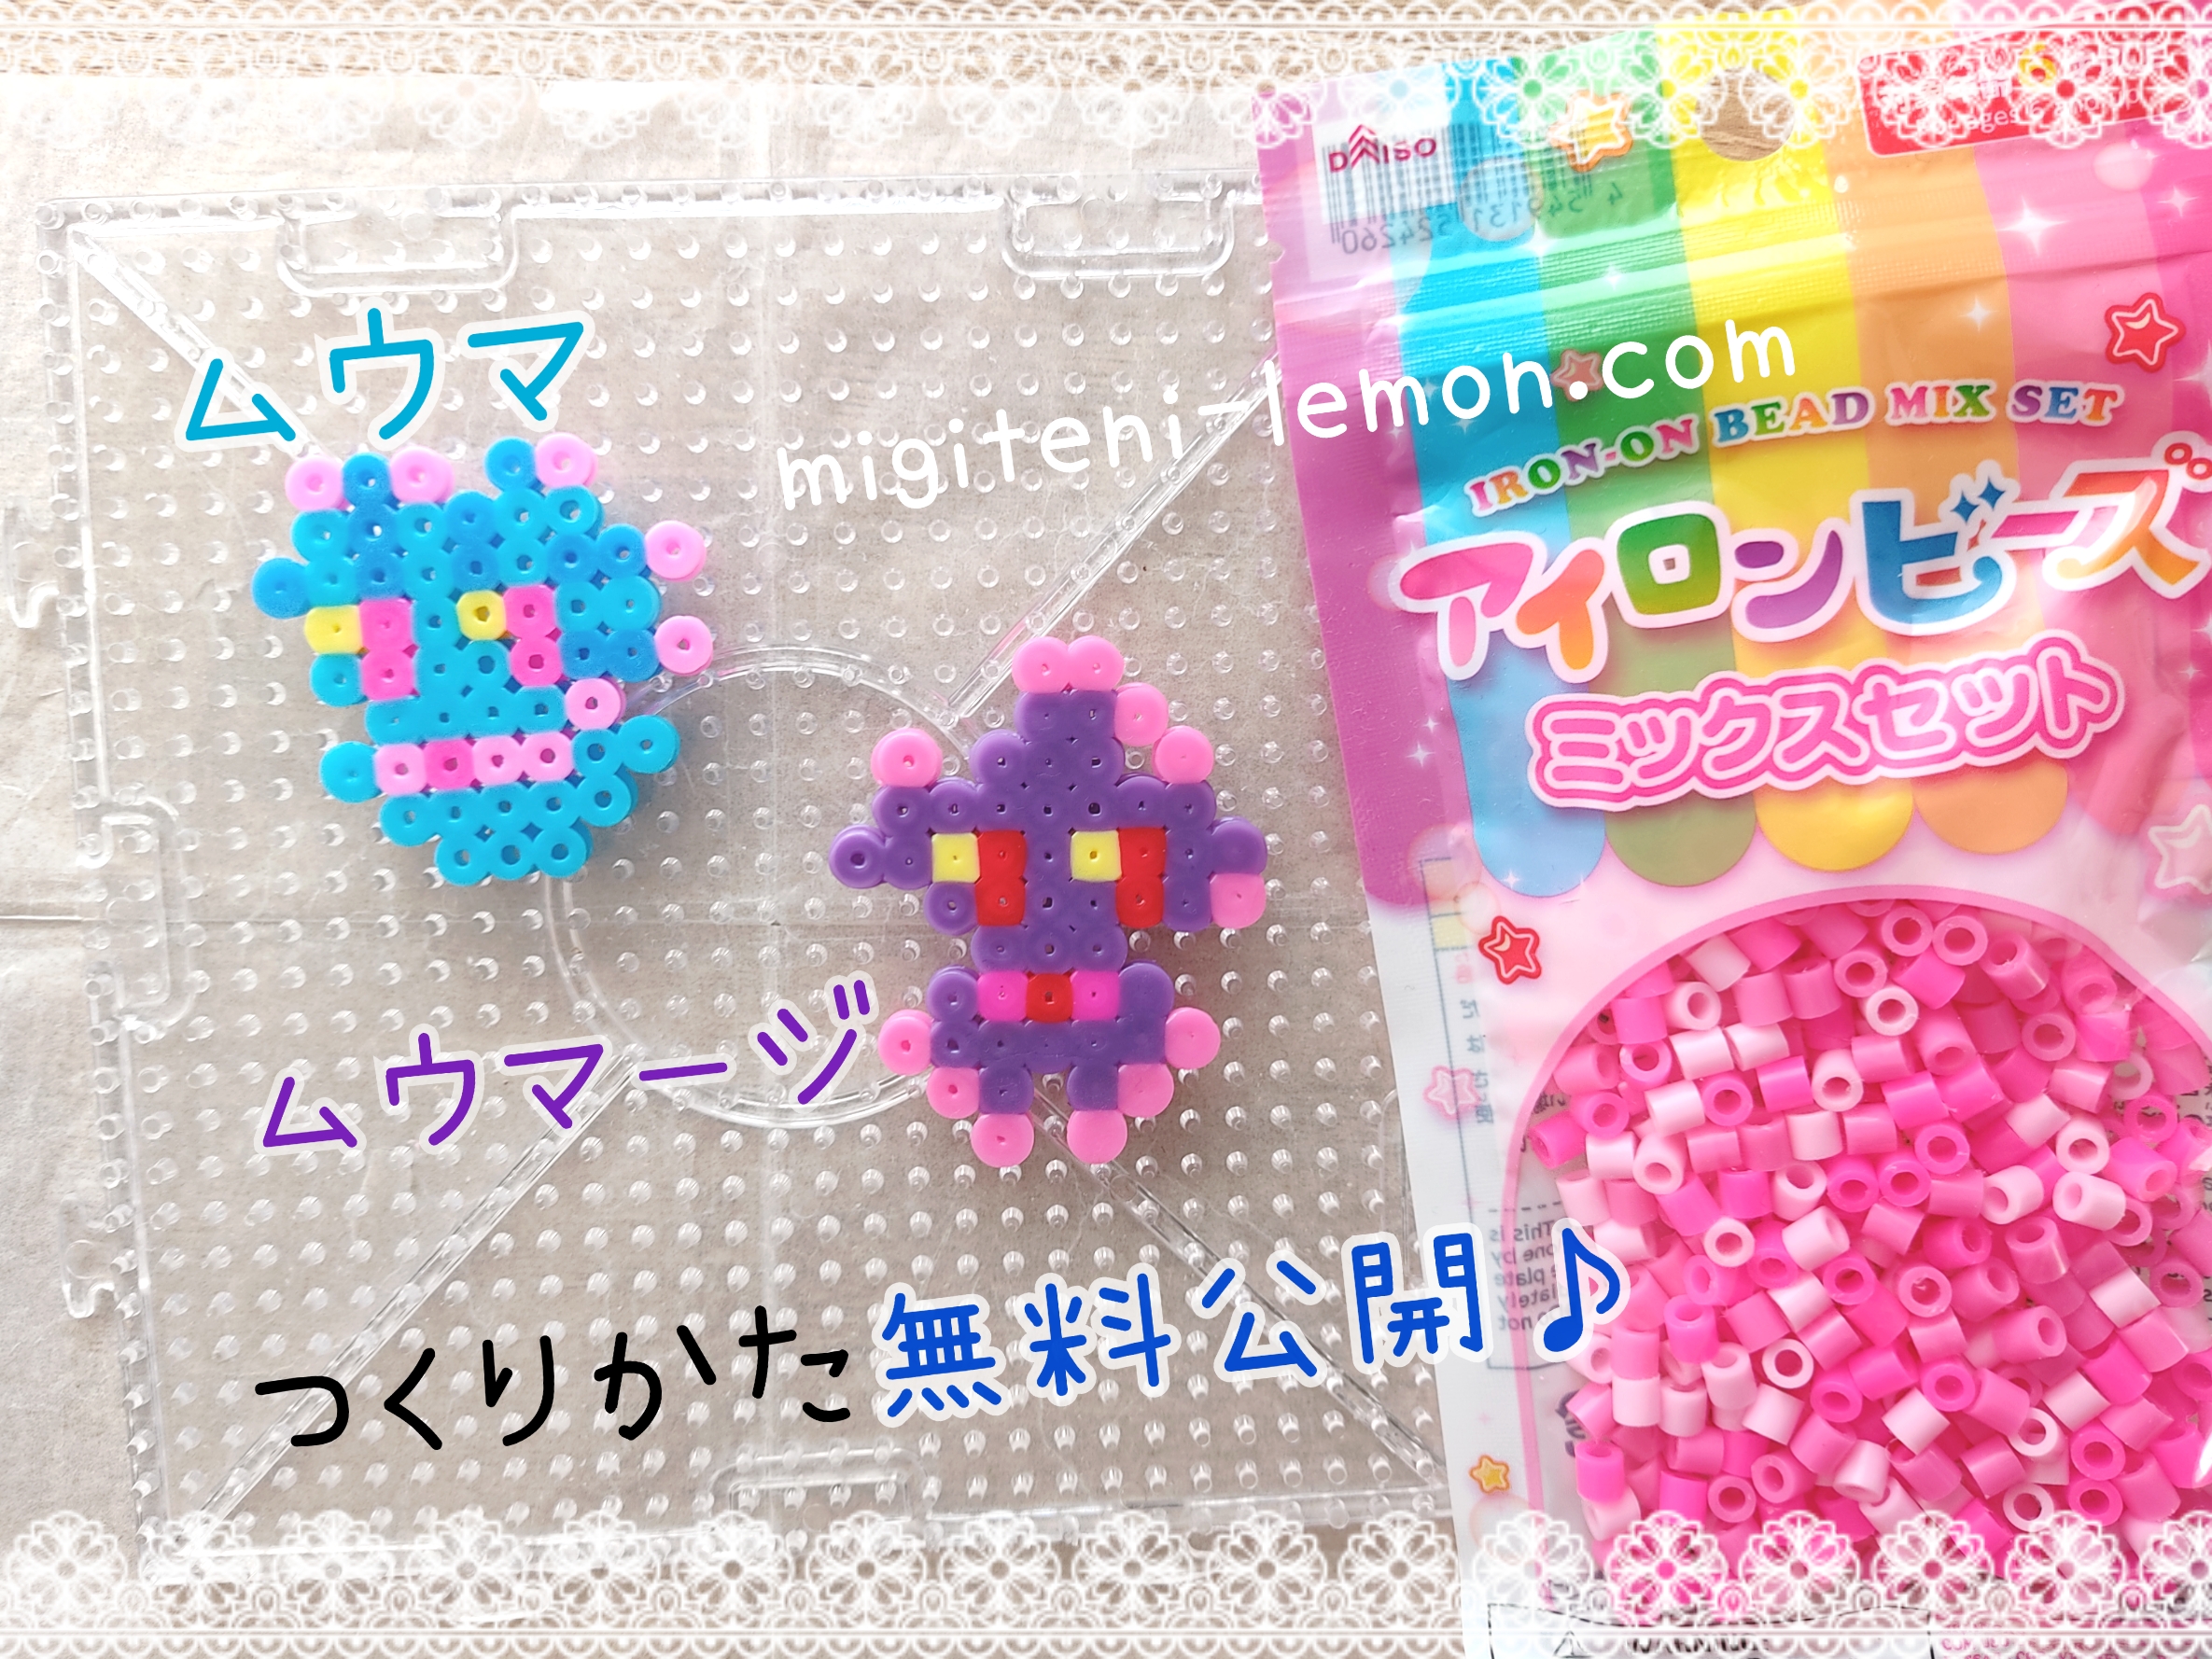 muuma-misdreavus-muumaji-mismagius-pokemon-beads-free